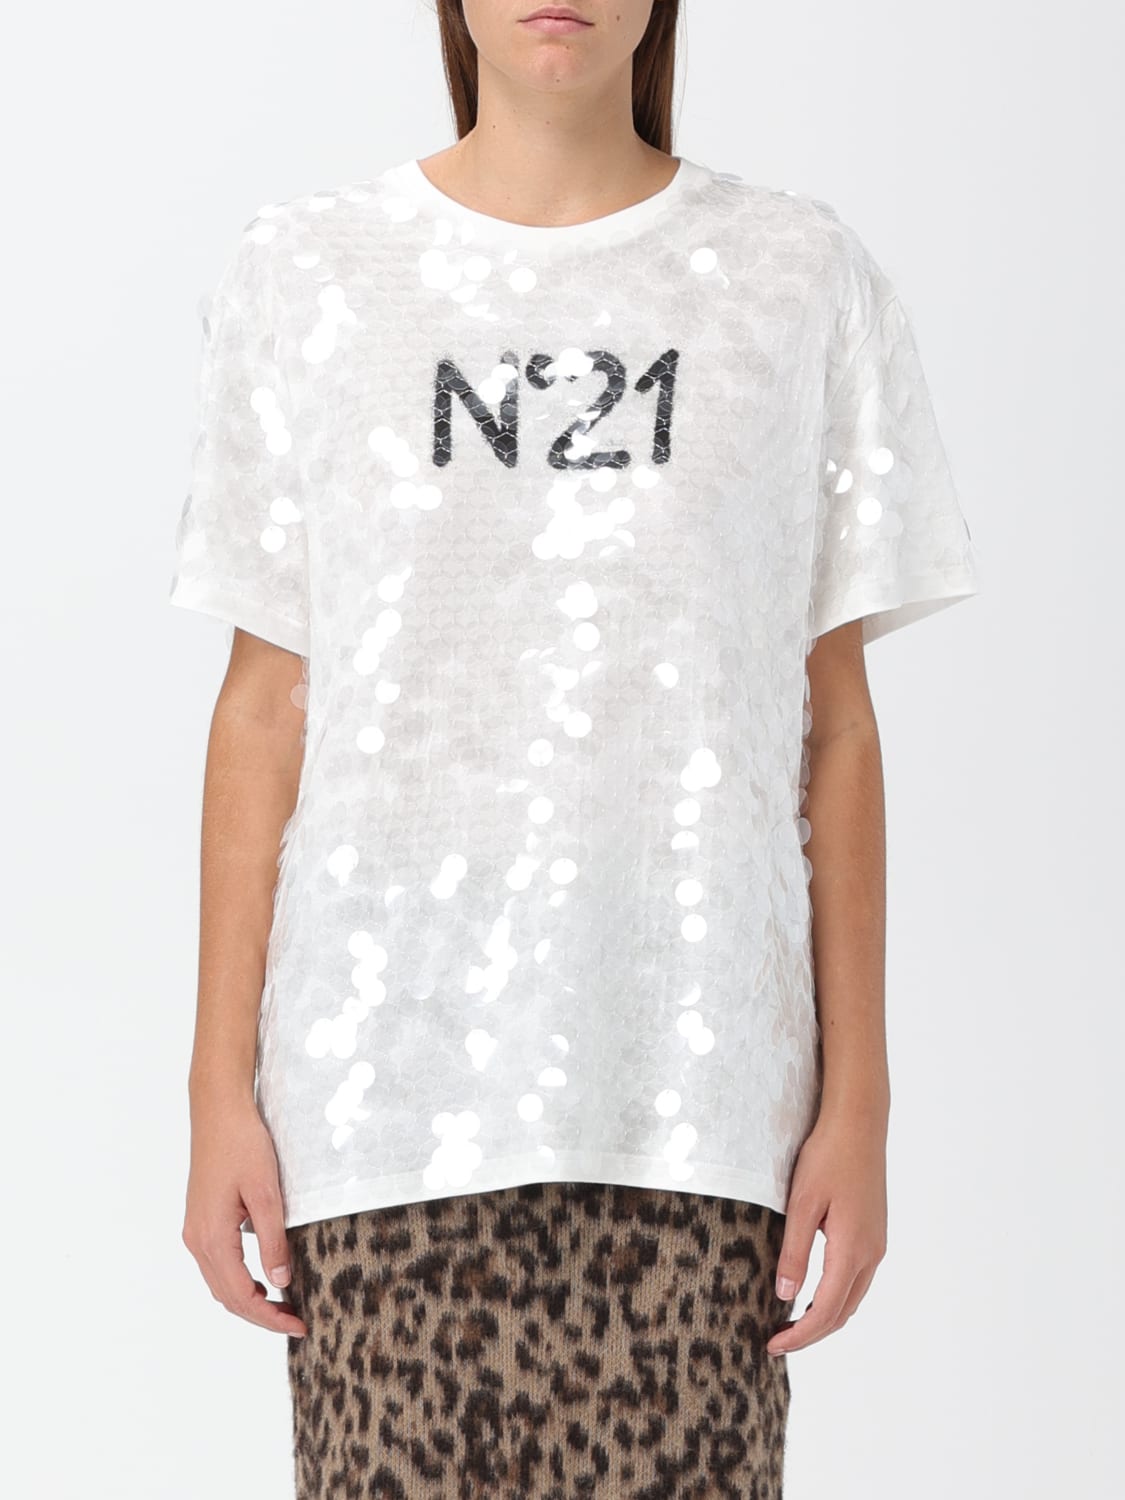 N° 21 - T-shirt woman